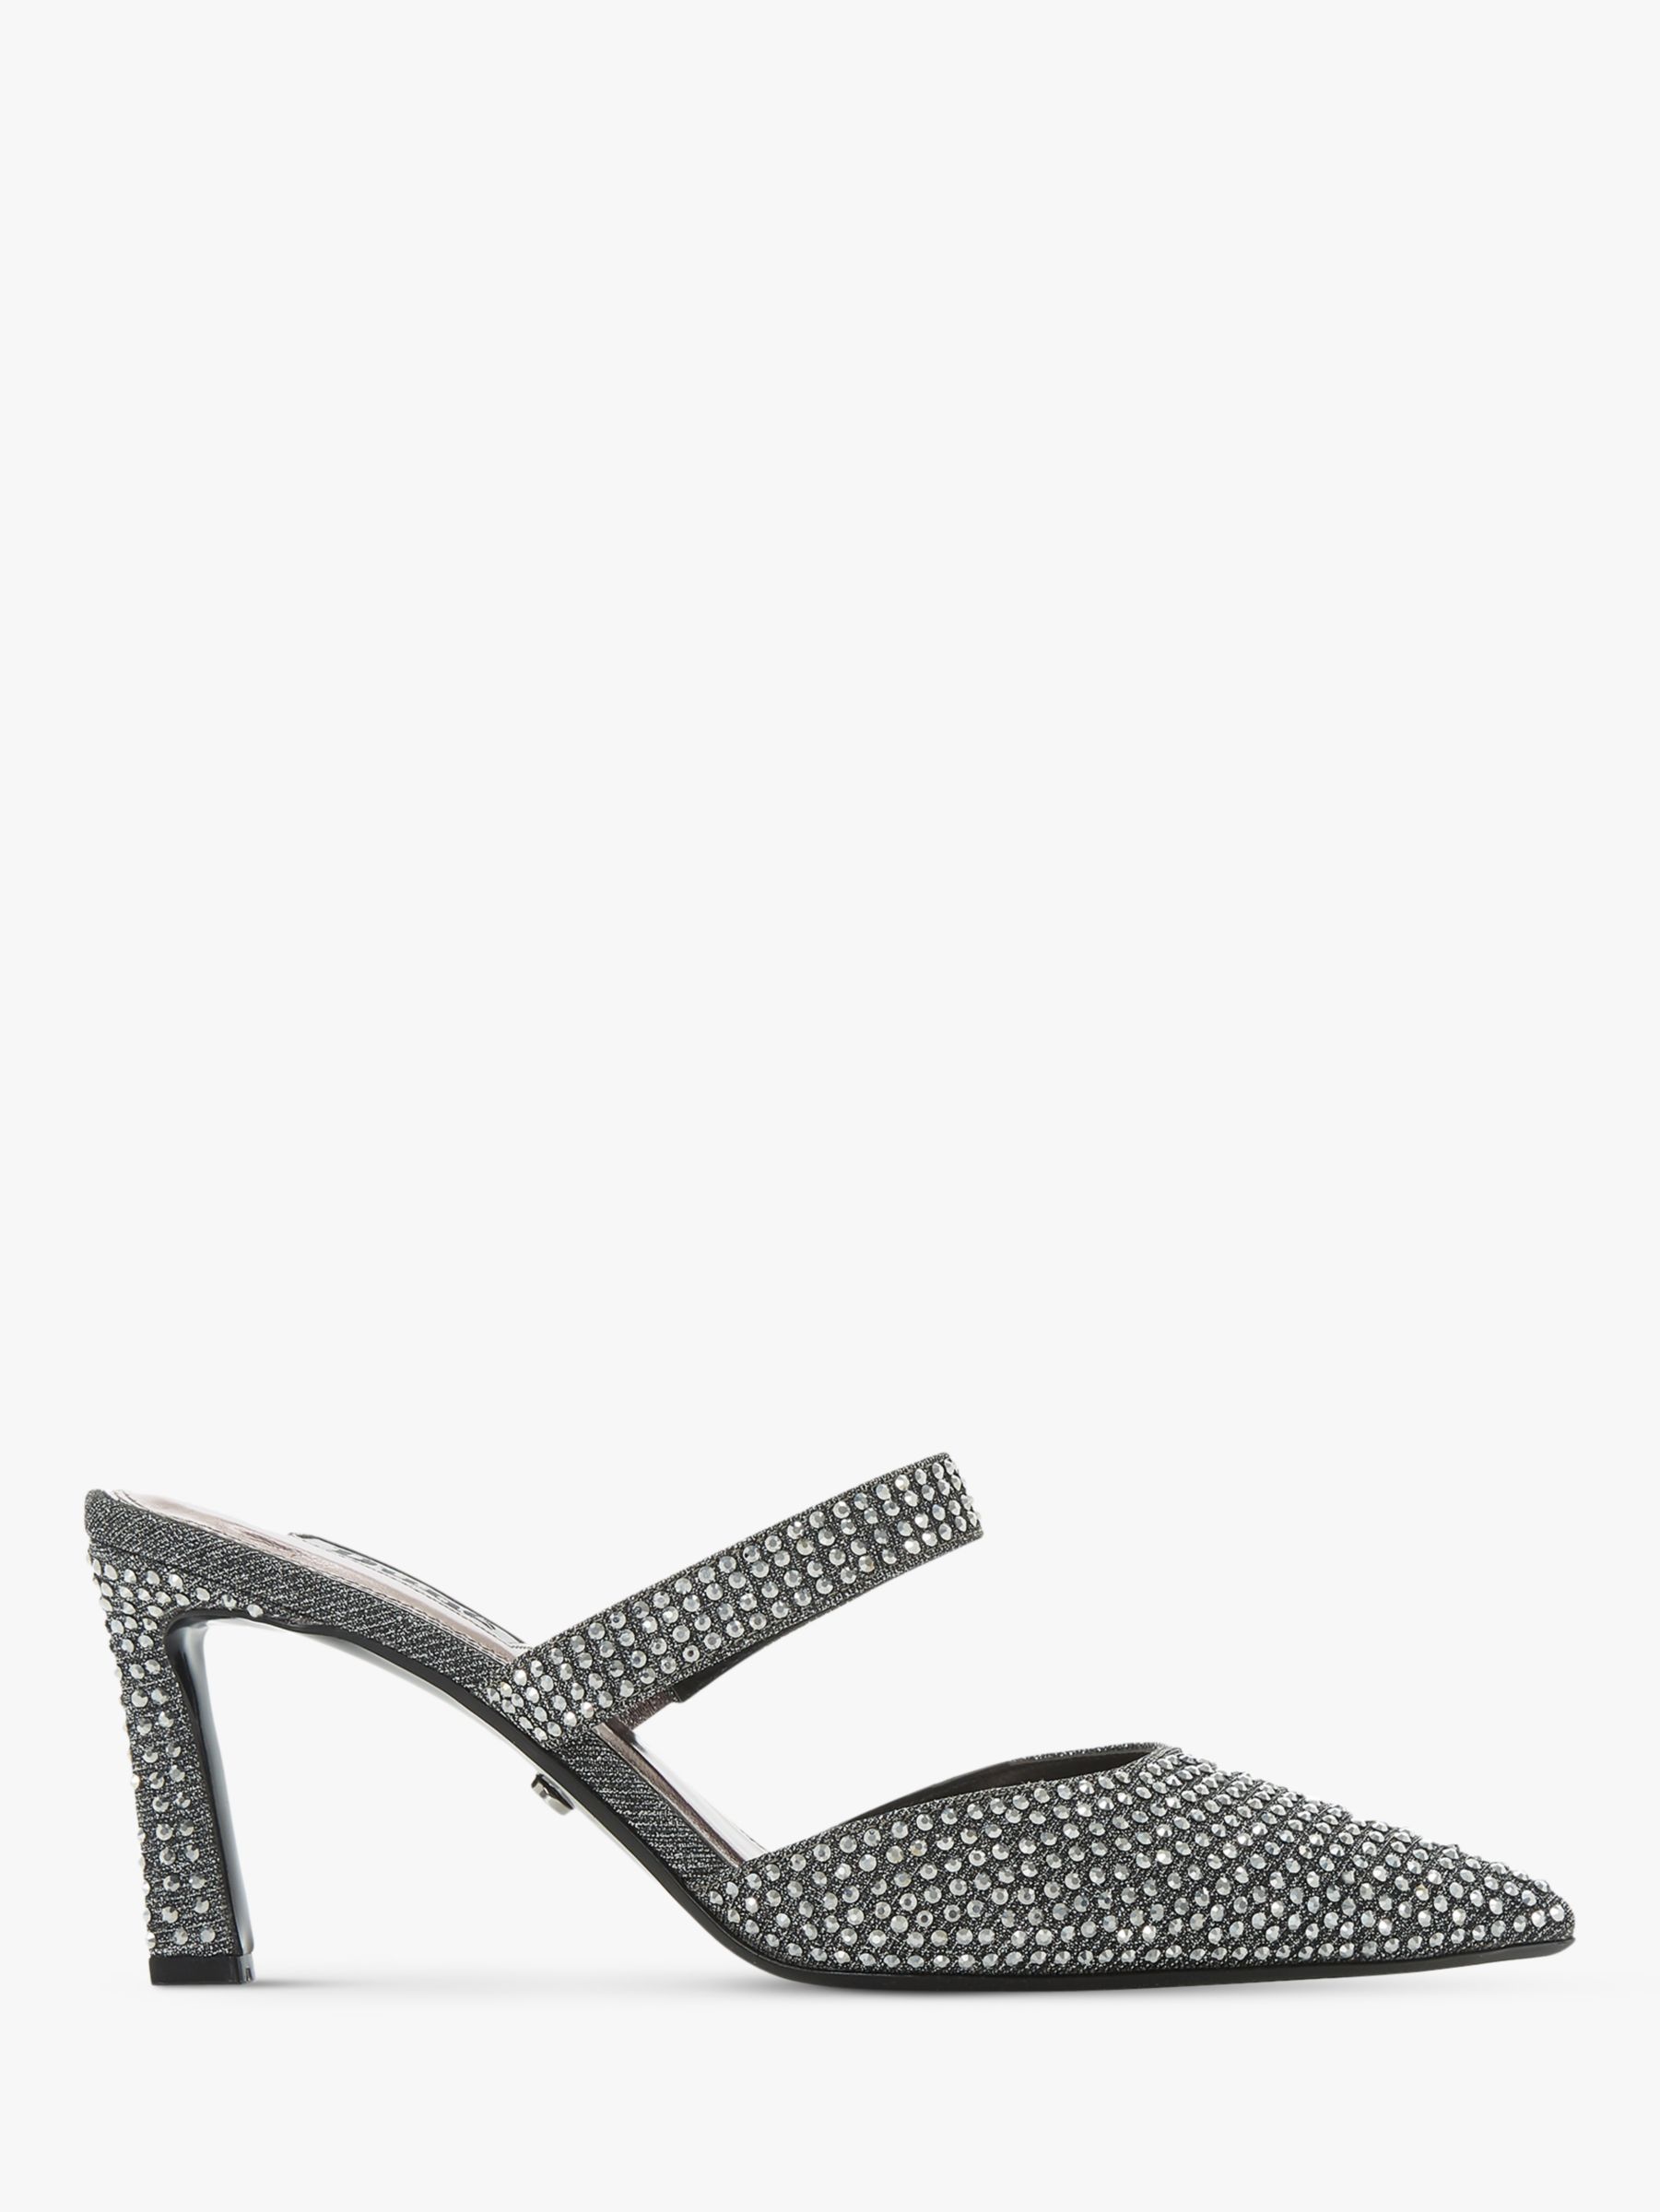 black diamante low heel shoes